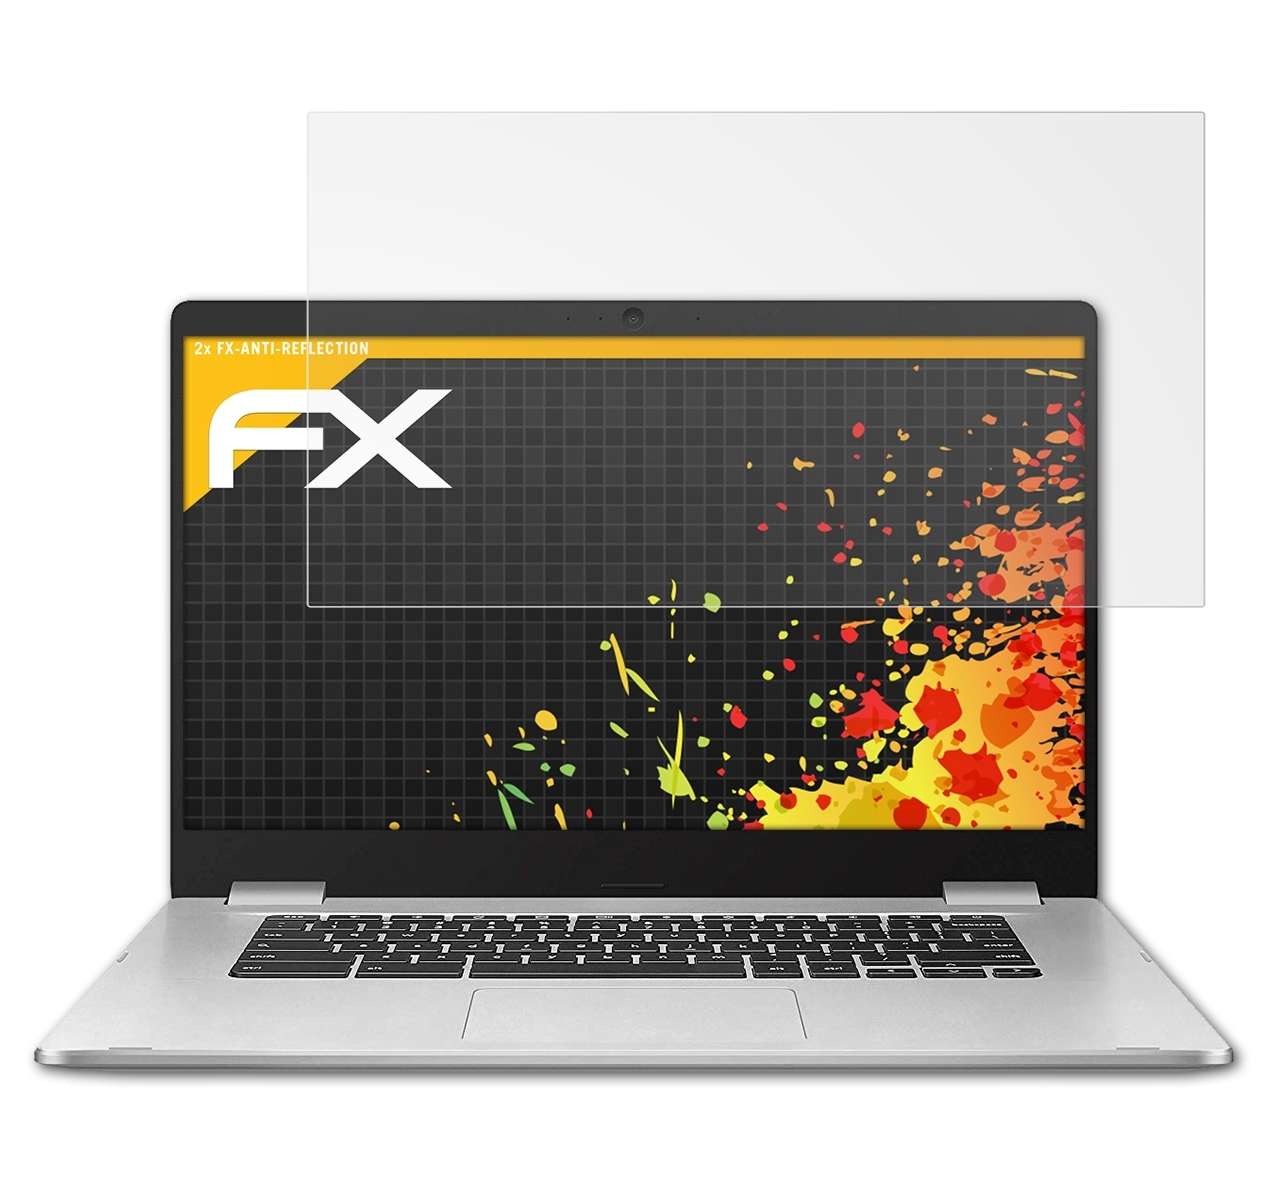 ATFOLIX 2x FX-Antireflex Displayschutz(für Asus Chromebook C523 (C523NA))